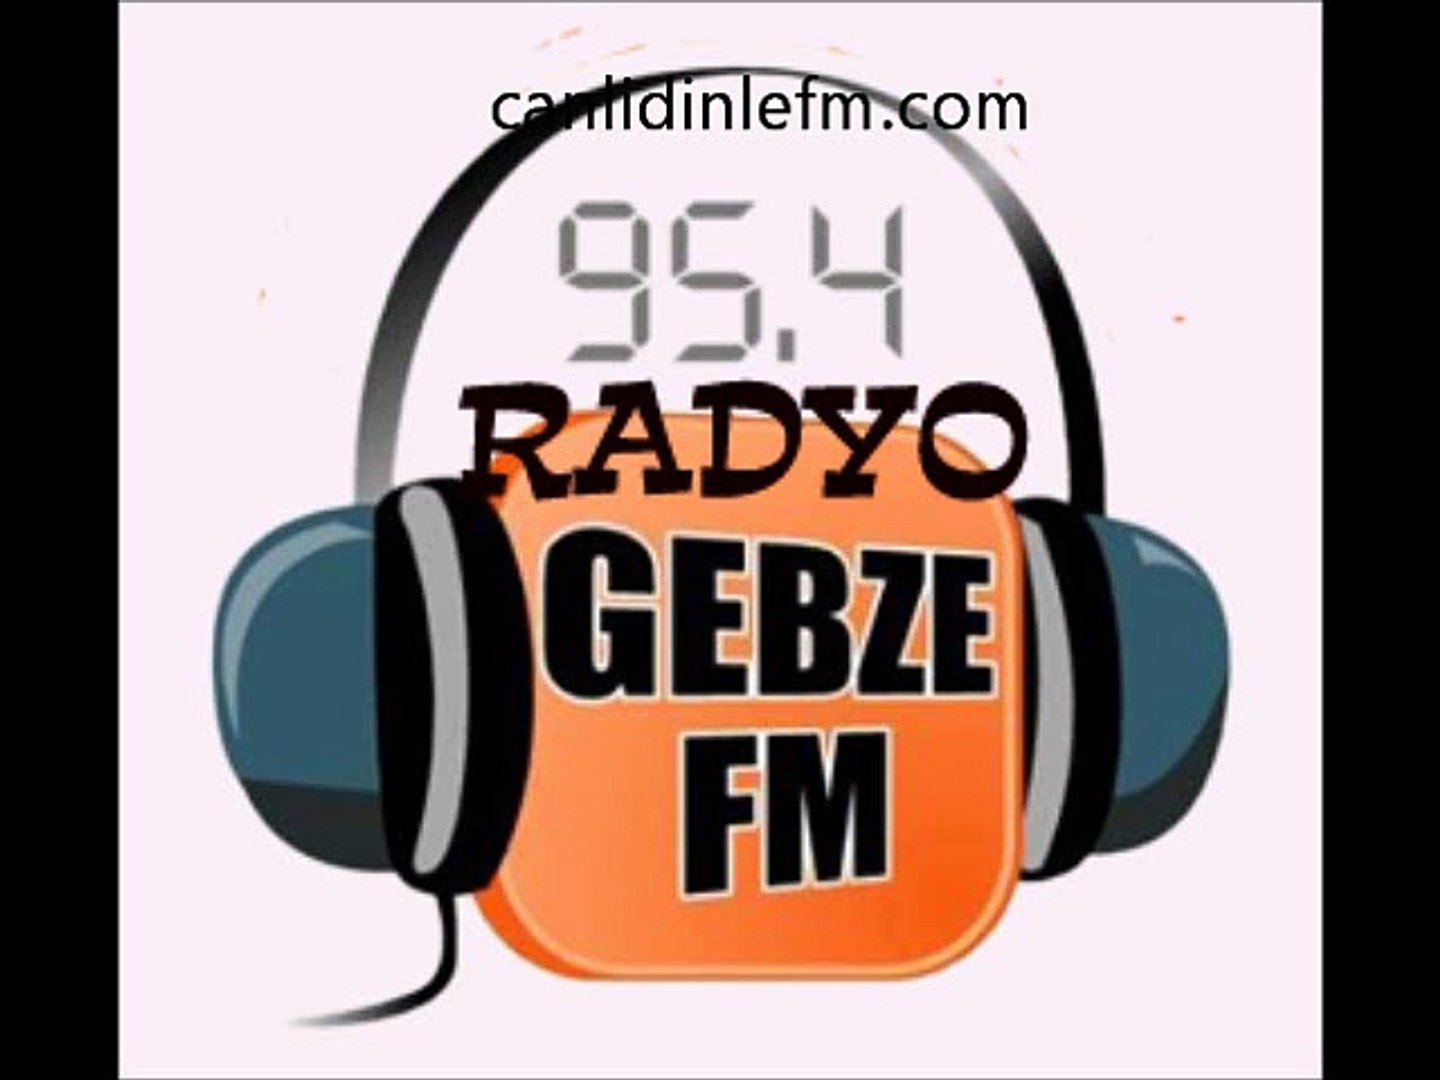 Radyo Gebze Fm - Dailymotion Video